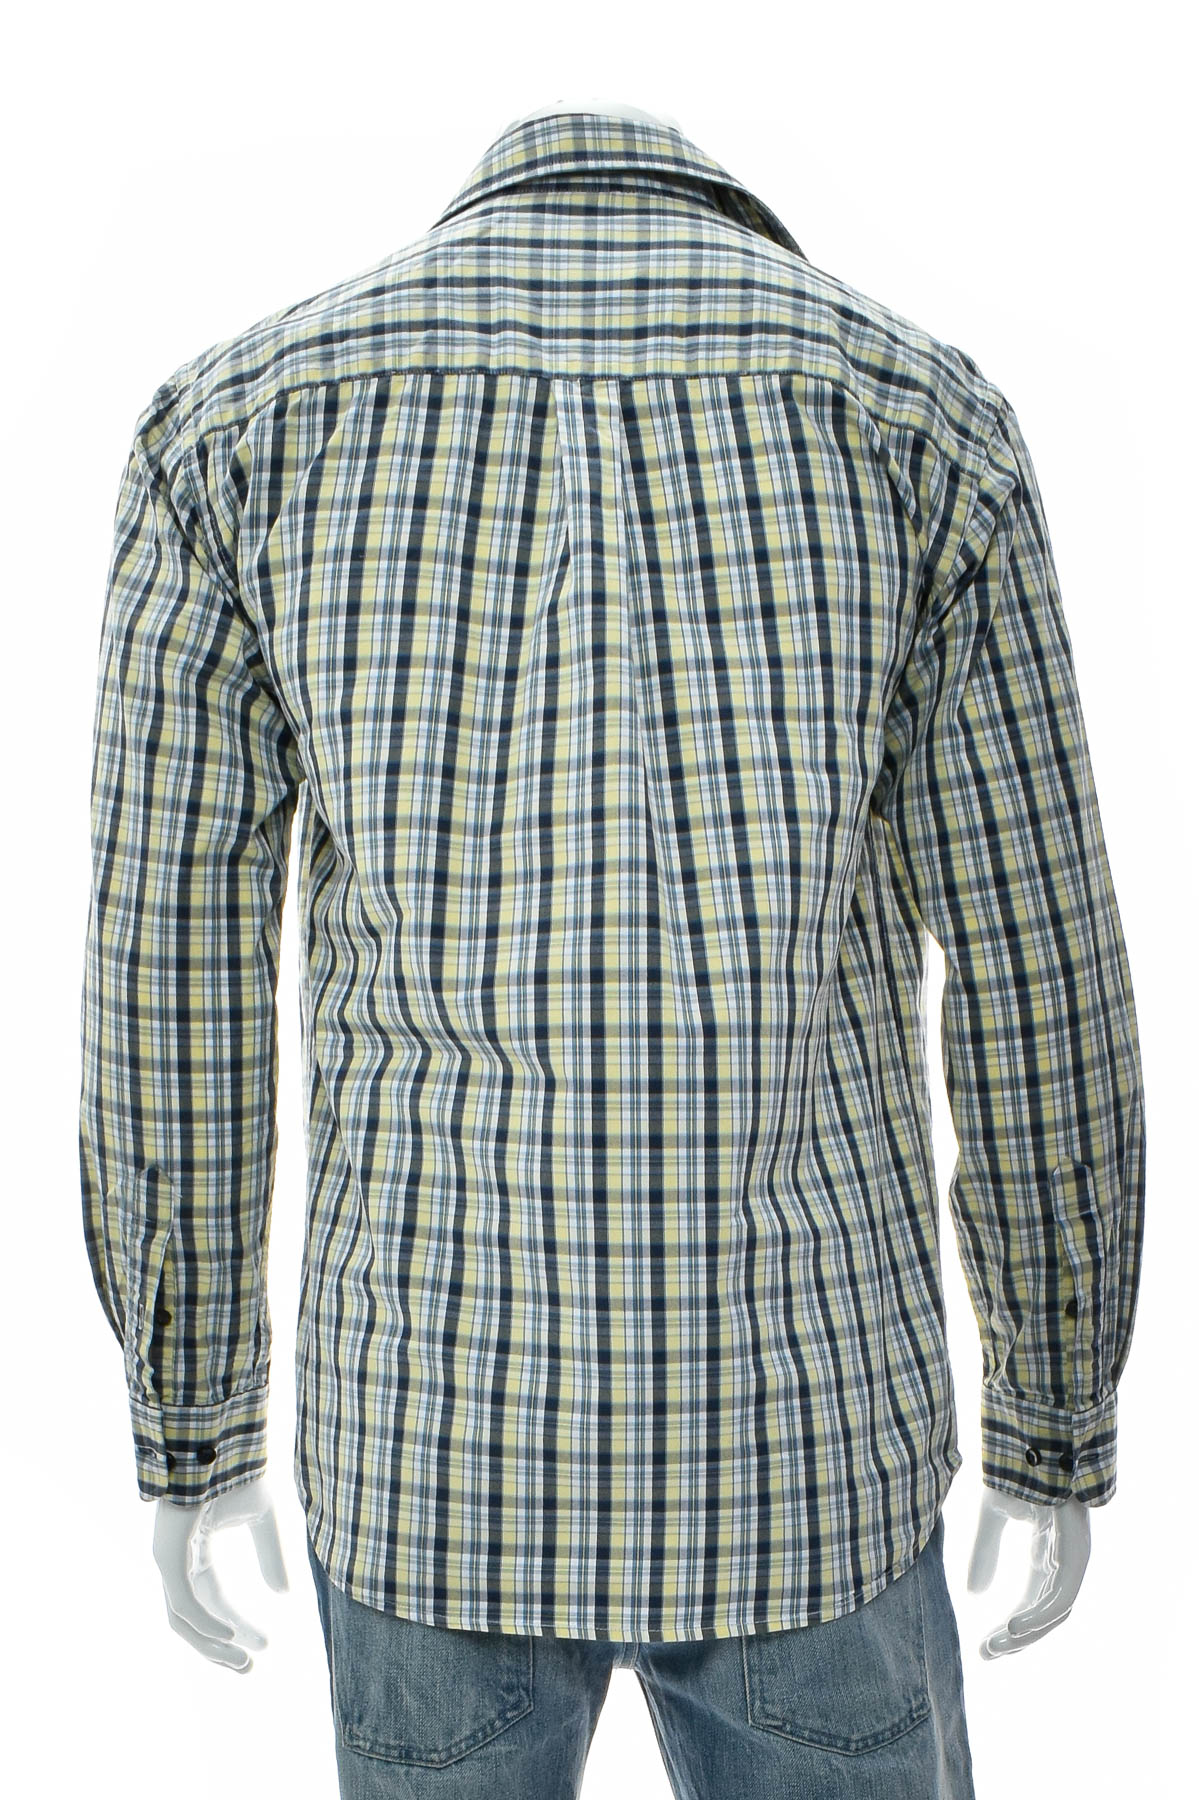 Men's shirt - A.W. Dunmore - 1